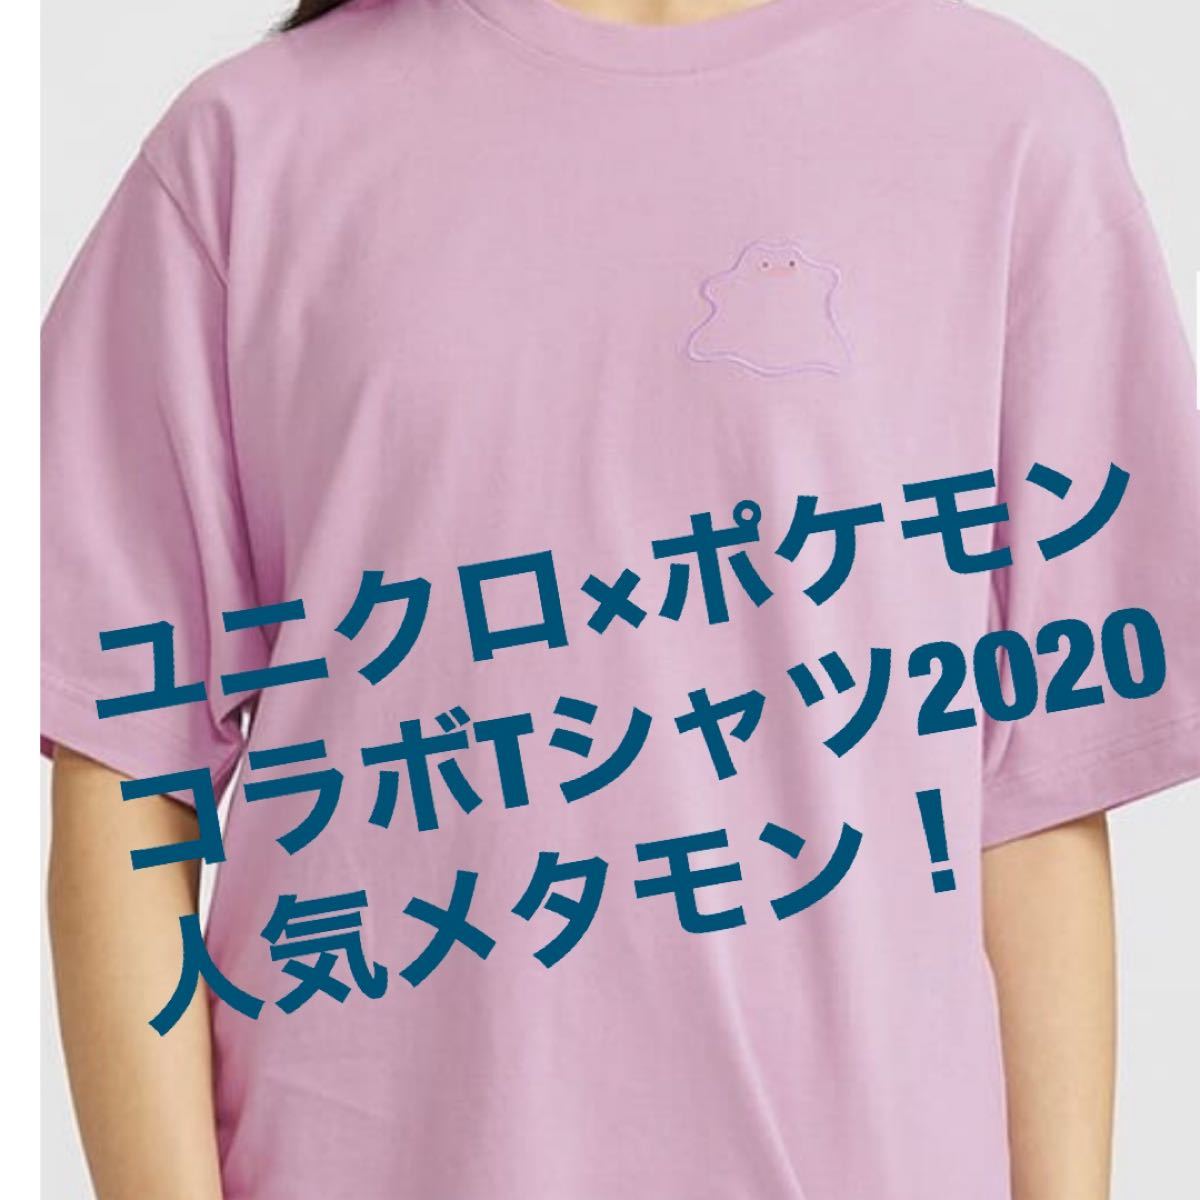 Paypayフリマ ユニクロ ポケモンtシャツ メタモン Sサイズ